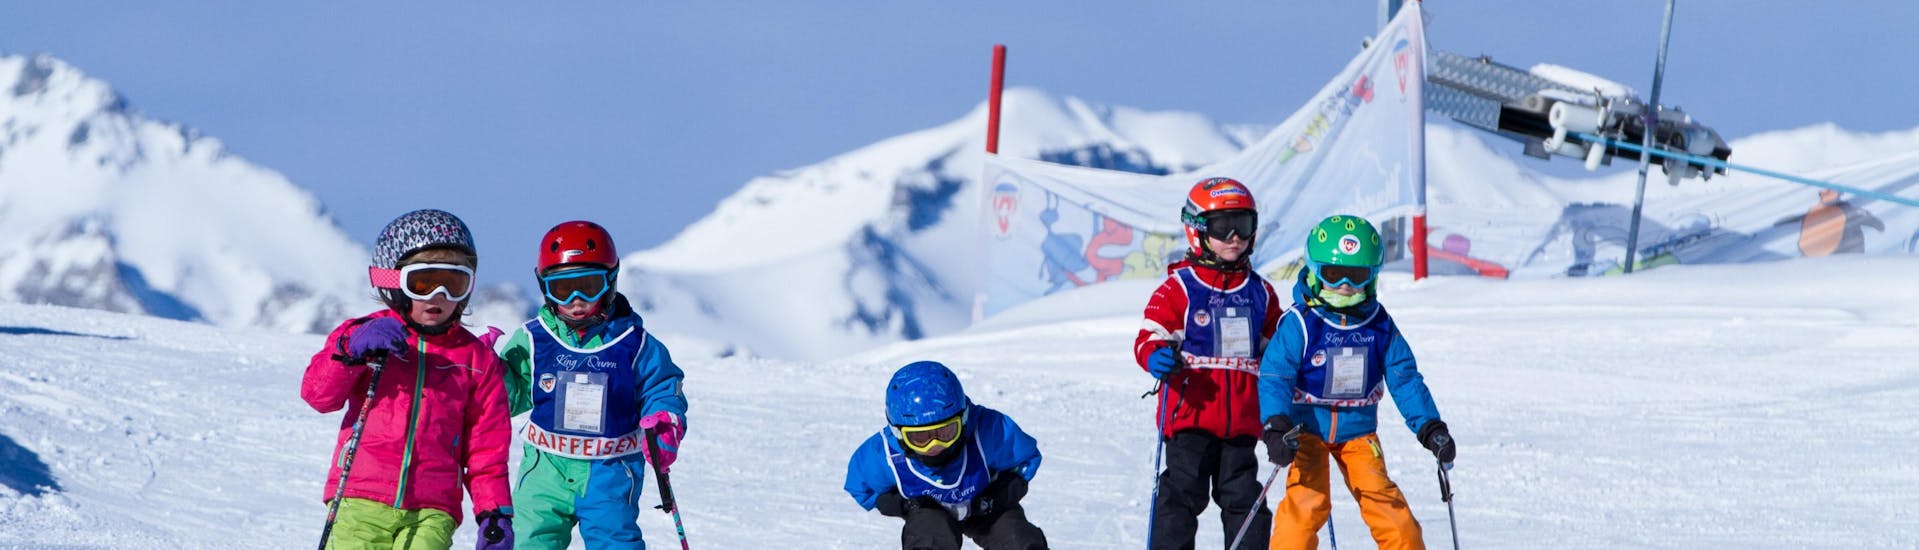 Cours de ski Enfants (3-7 ans) pour Débutants - Journée.